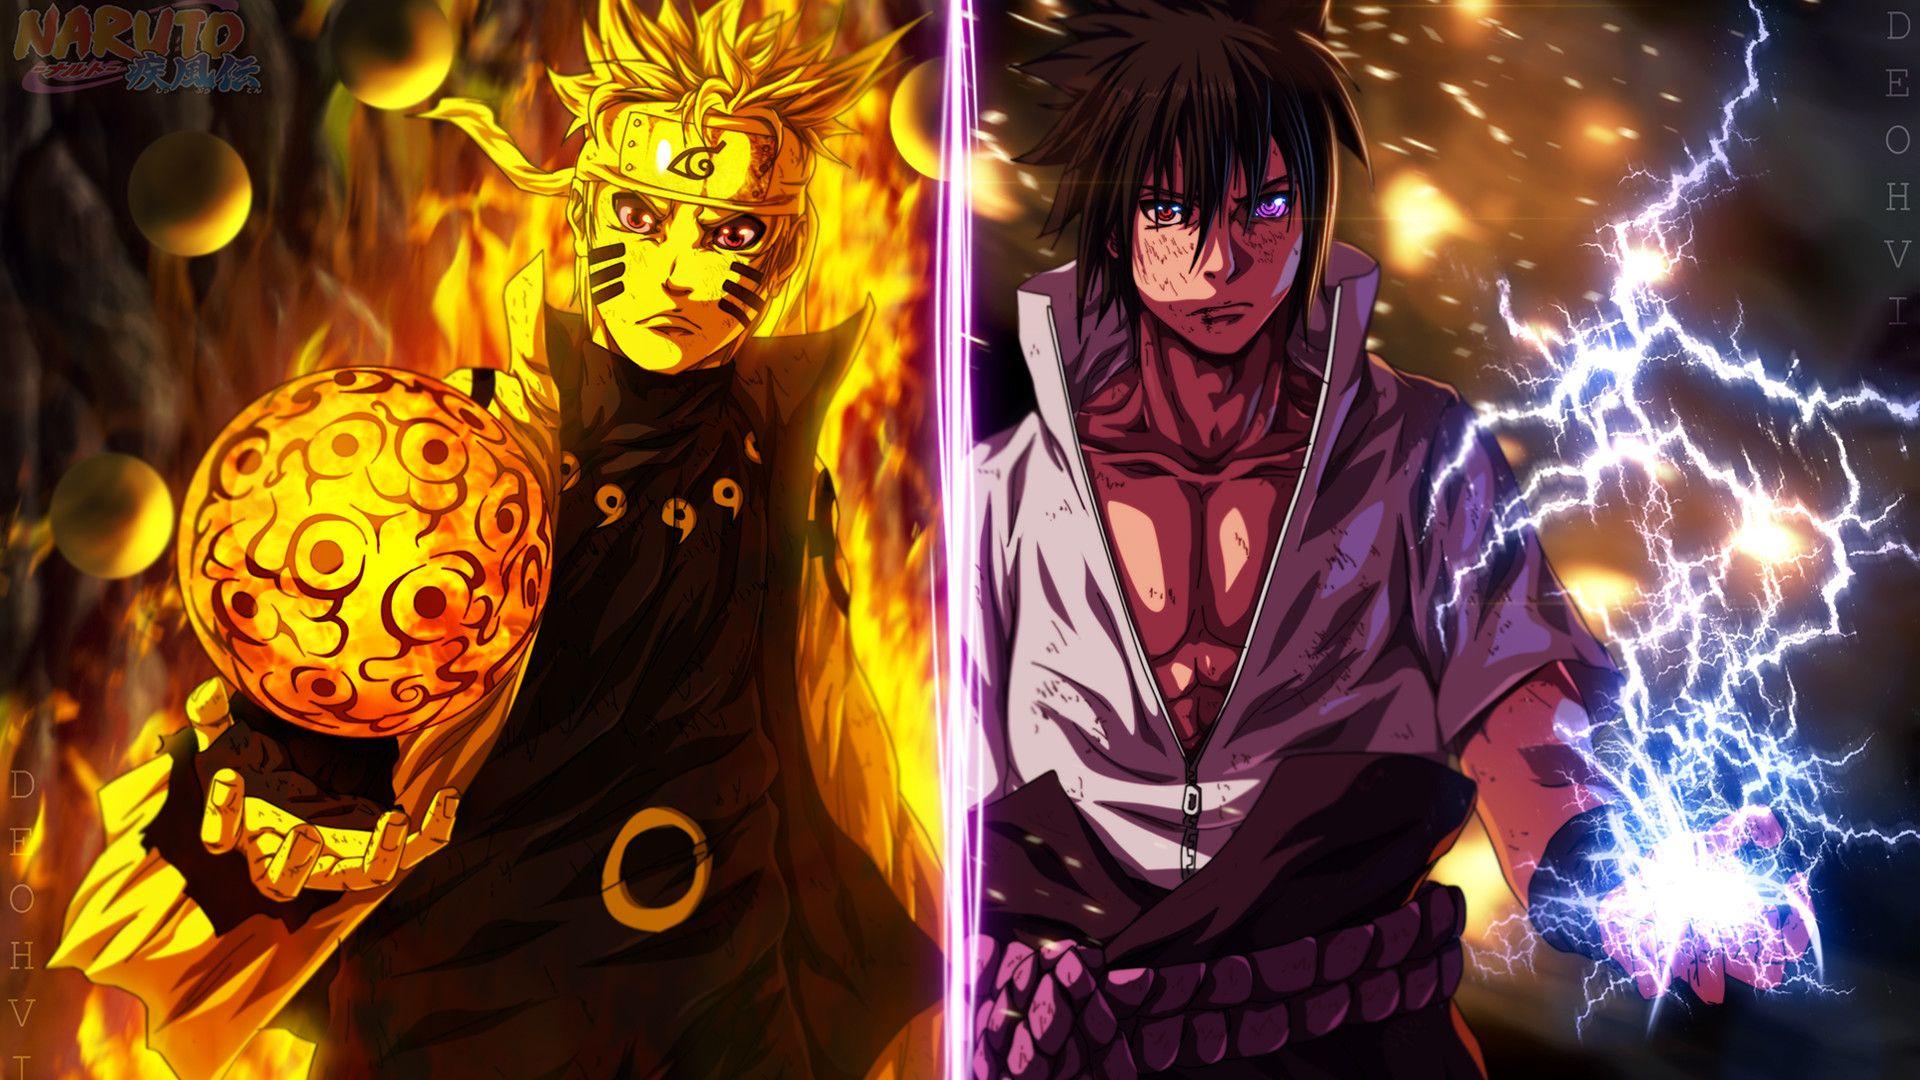 1920 x 1080 · jpeg - Naruto and Sasuke Wallpapers - Top Free Naruto and Sasuke Backgrounds ...